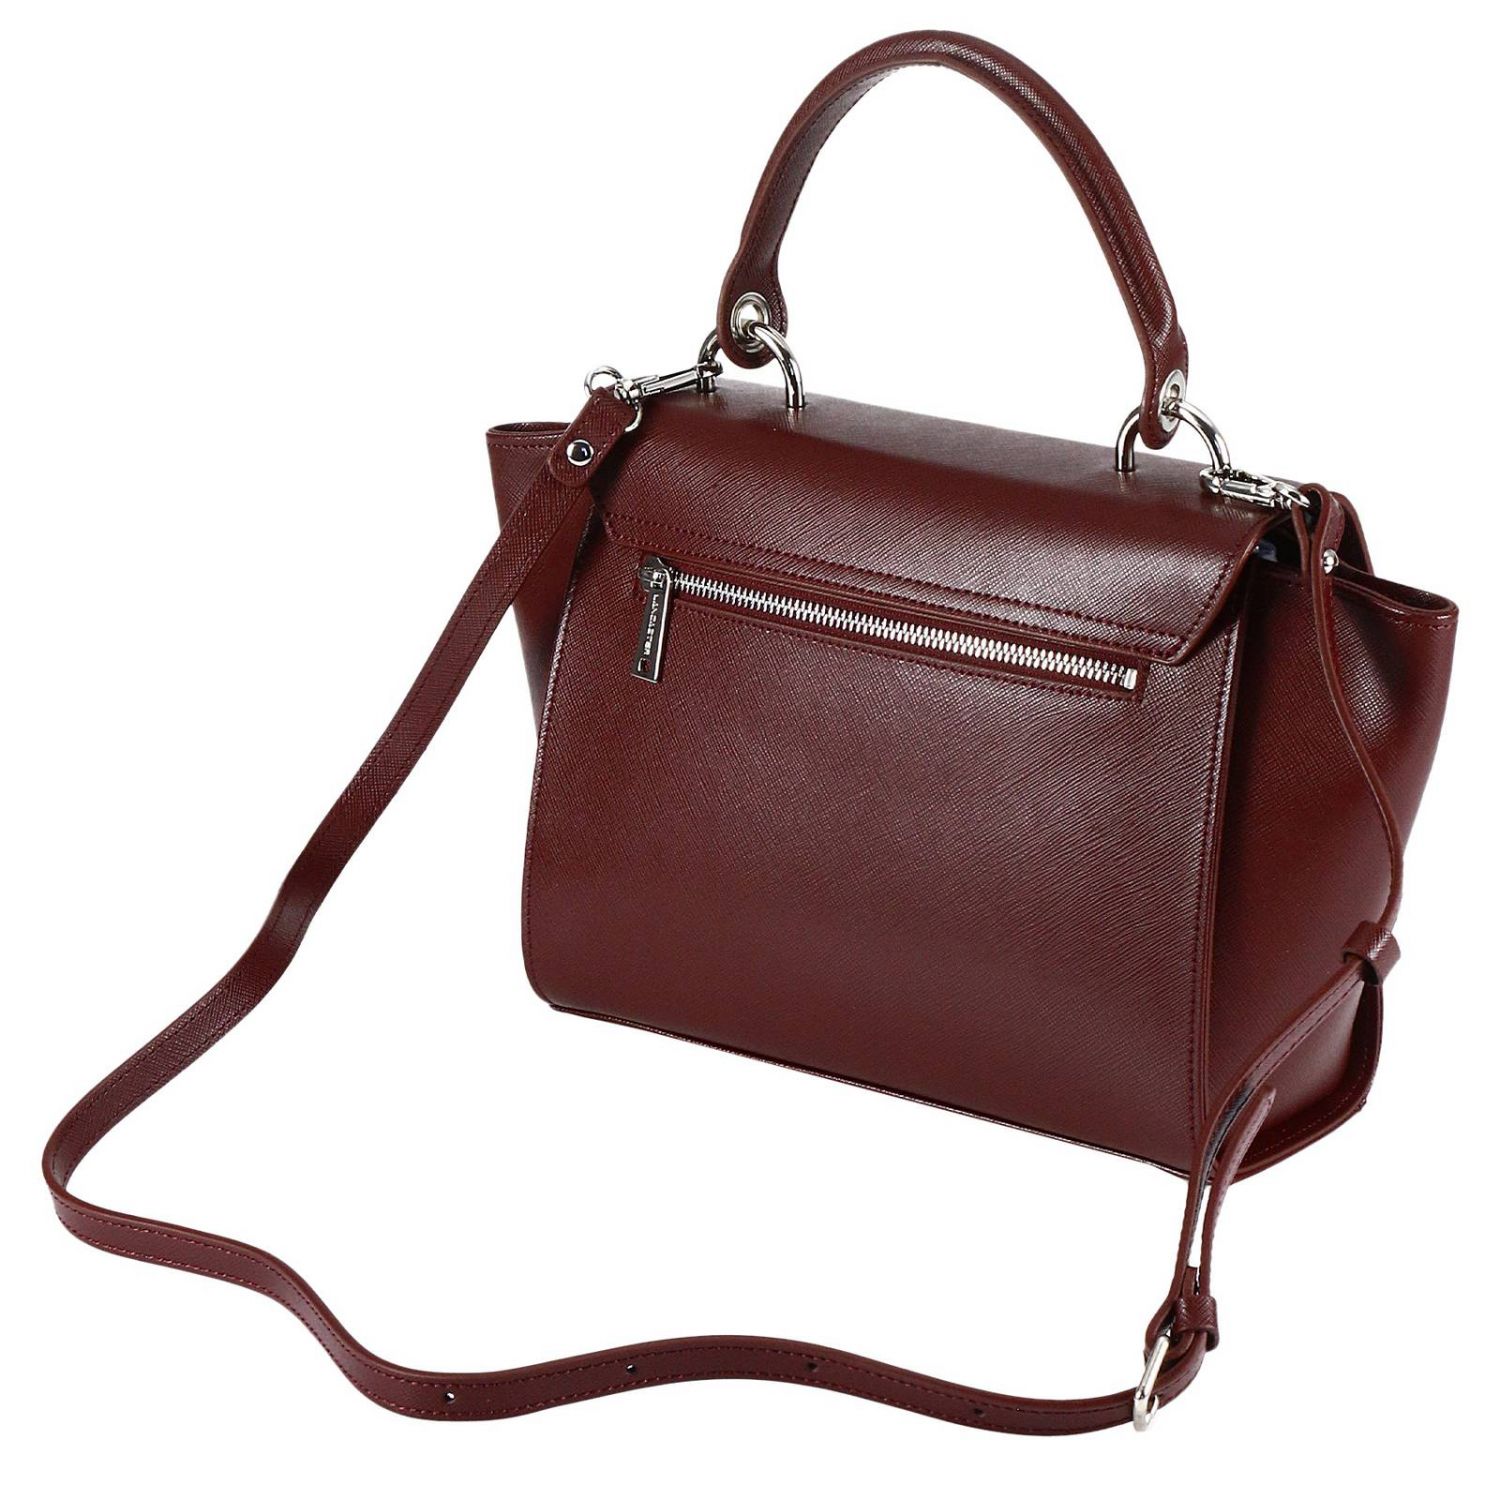 Lancaster Paris Outlet: Shoulder bag women | Handbag Lancaster Paris ...